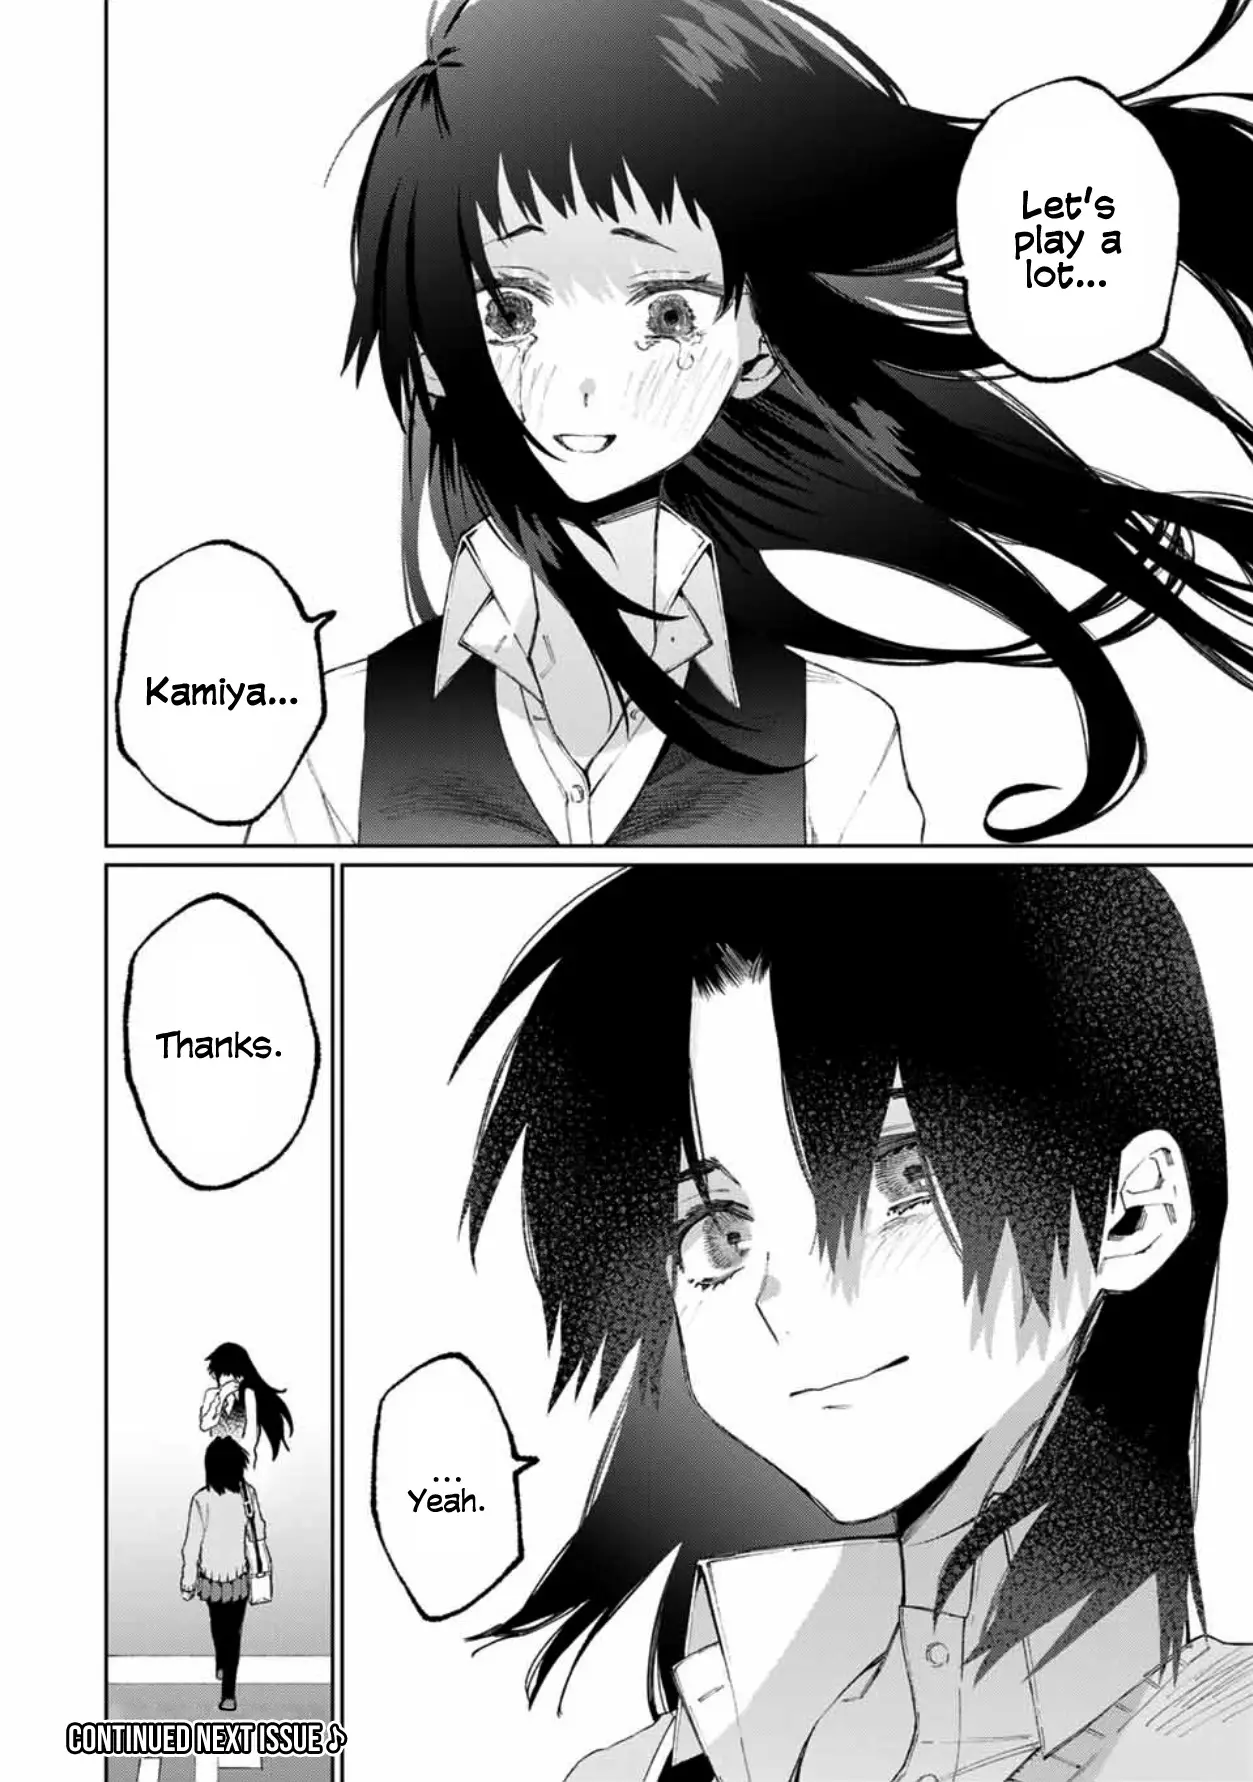 Shikimori's Not Just A Cutie - 48 page 13